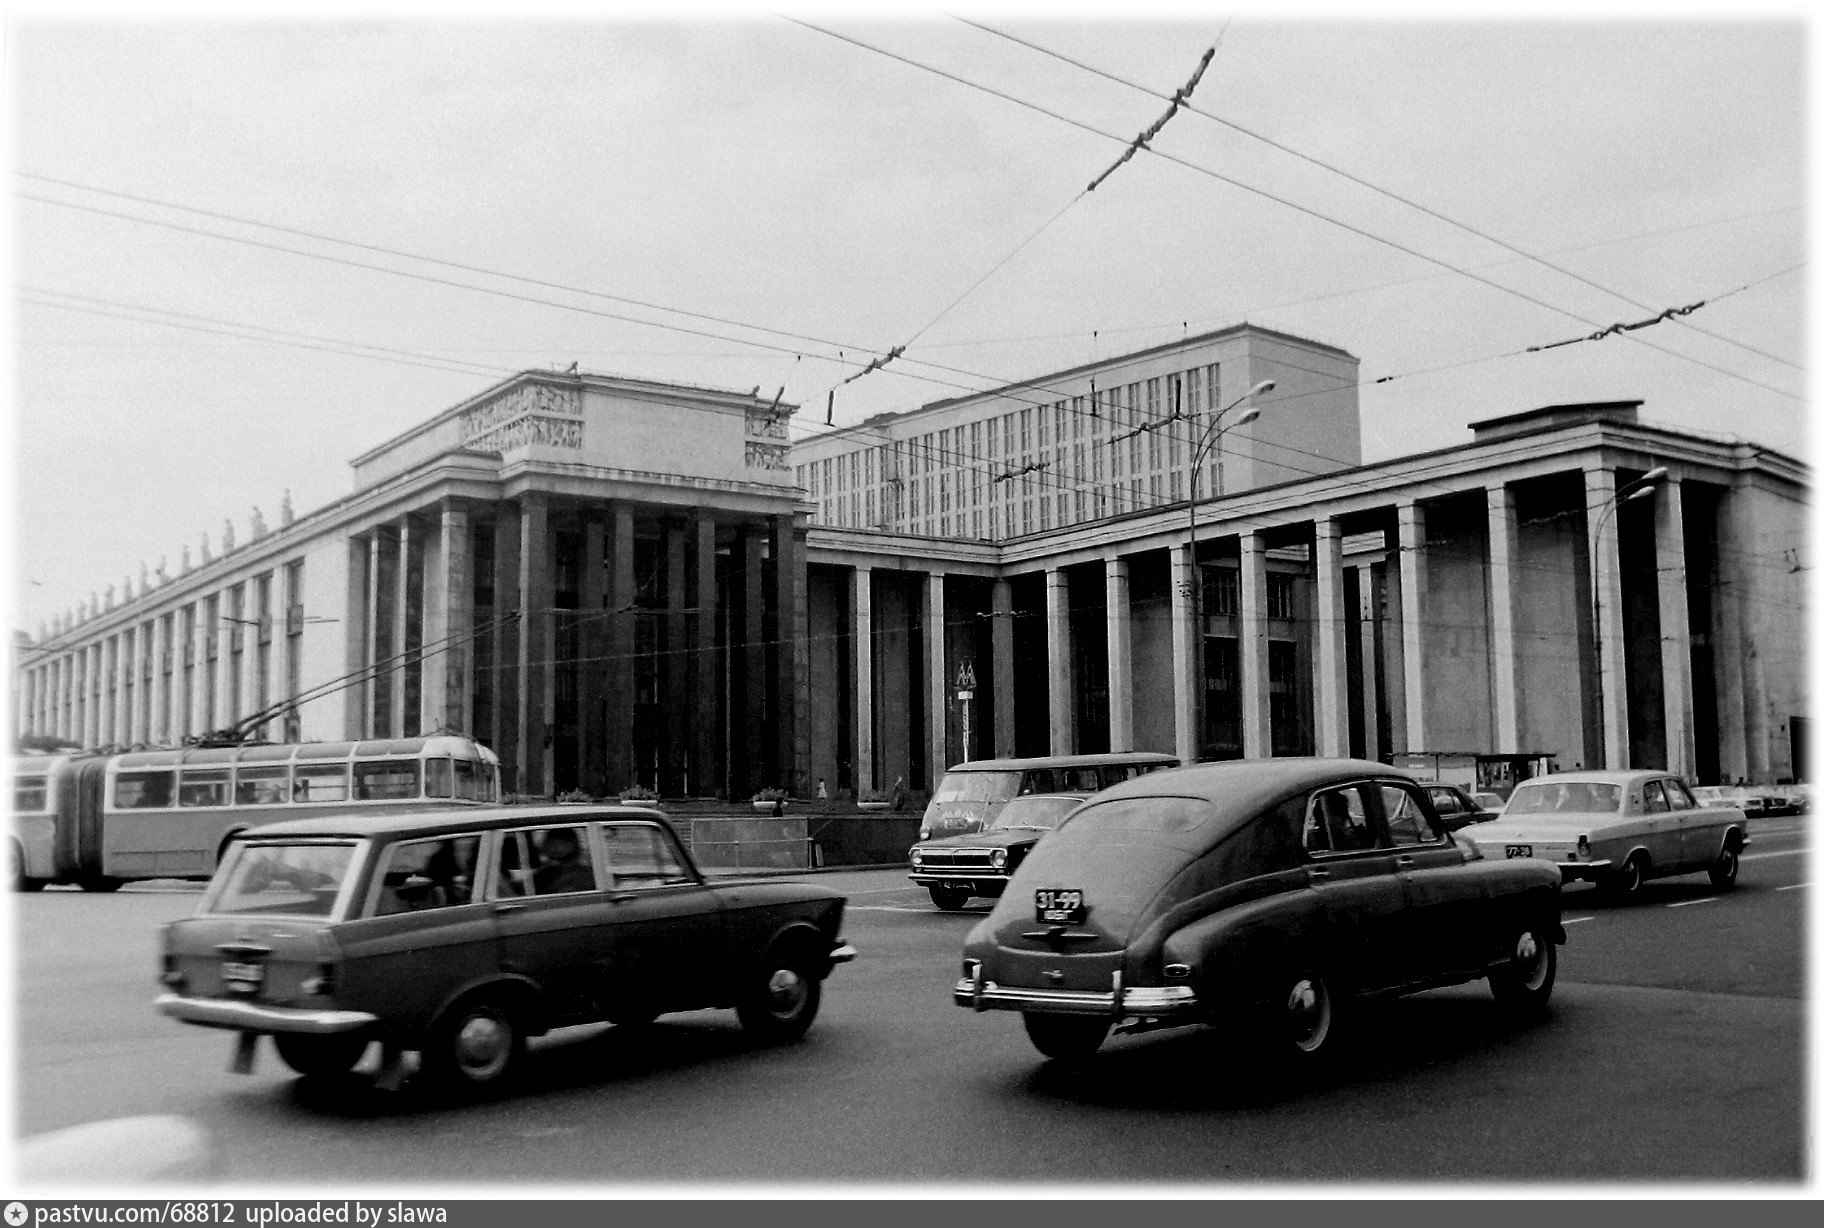 Москва 1974 год